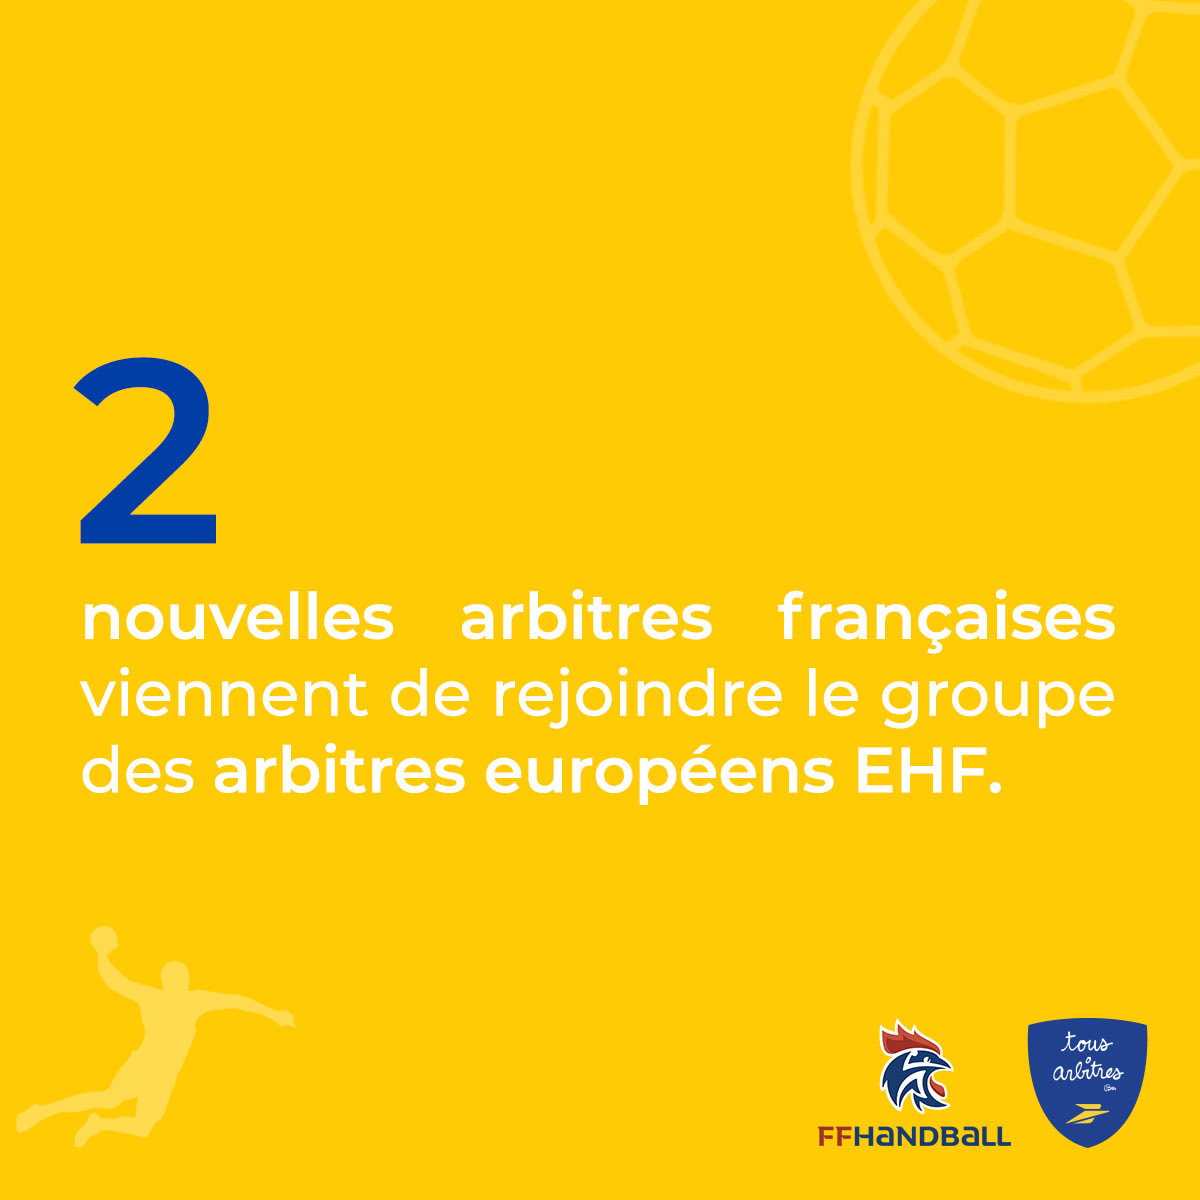 #Chiffredelasemaine Félicitations à Loriane Lamour et Mathilde Cournil qui rejoignent le groupe des arbitres européens EHF ! Inspirez-vous de leur parcours et rejoignez la prochaine génération qui façonne l'avenir du sport en Europe. 🏆🇪🇺 #TousArbitres @GroupeLaPoste @ffhandball